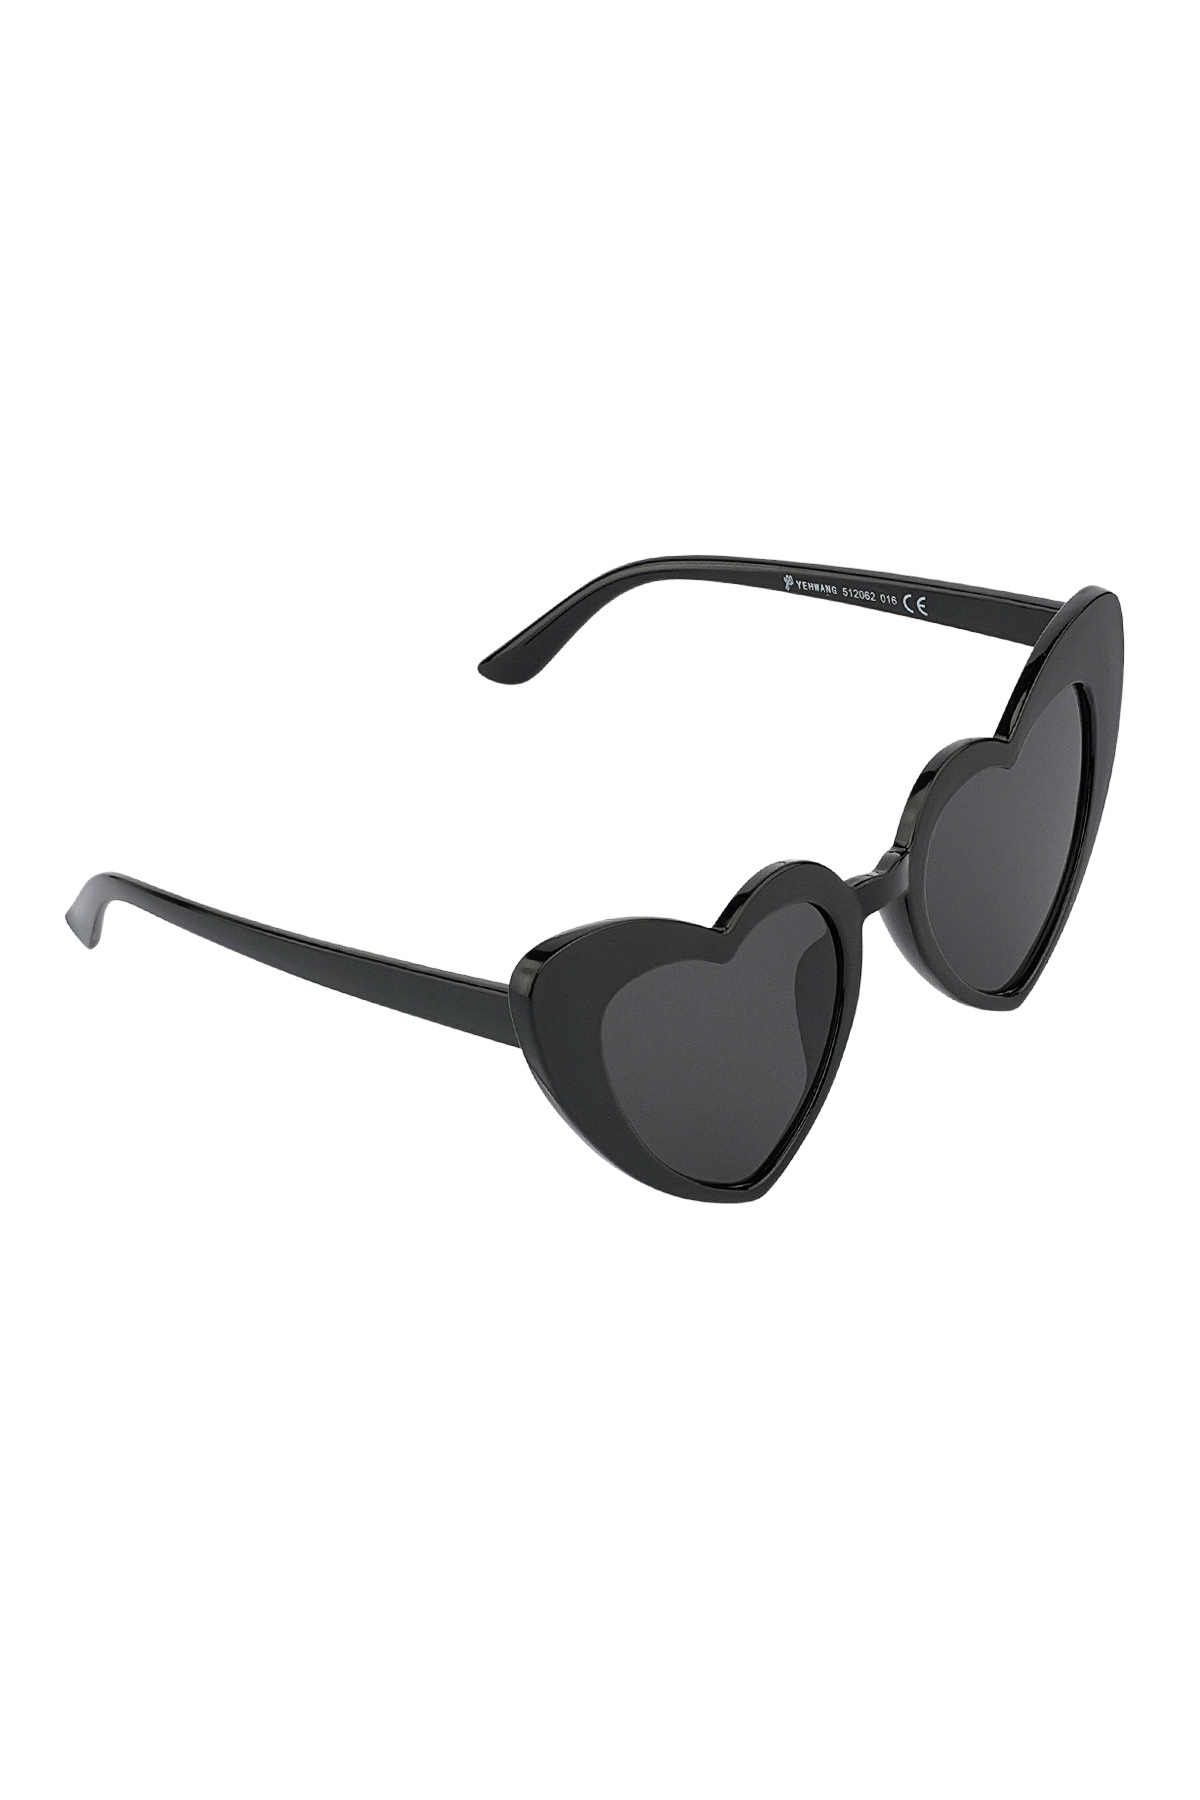 L'amore per gli occhiali da sole è nell'aria: in bianco e nero h5 Immagine2